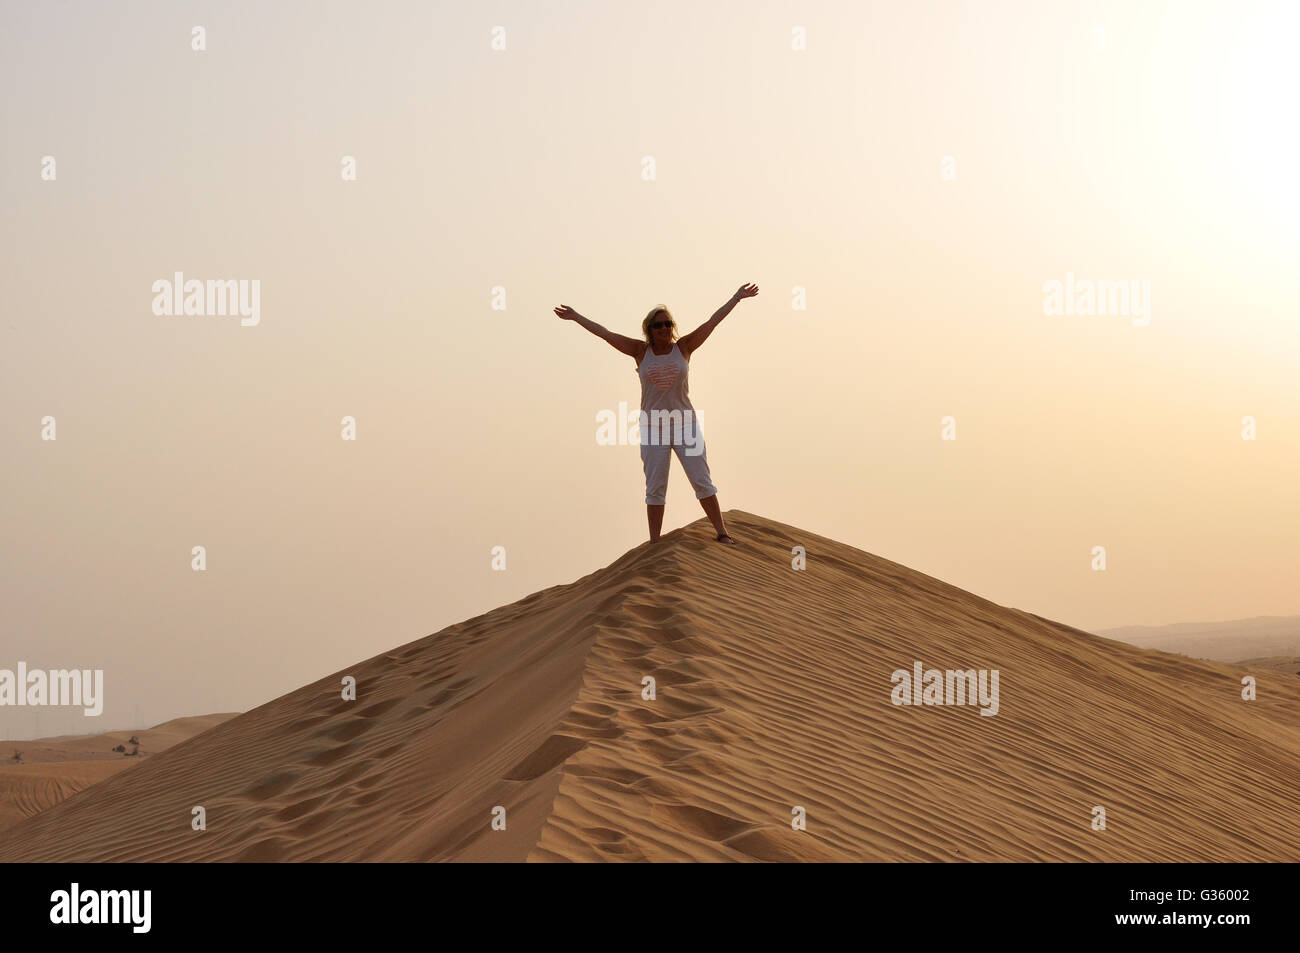 Mädchen, Person, Frau auf der Sanddüne Hallo winken. Auf Wiedersehen, Dubai VAE, Sonnenuntergang oder in der Sonne steigen, Cool der Wüste. Silhouette in der Wüste Stockfoto